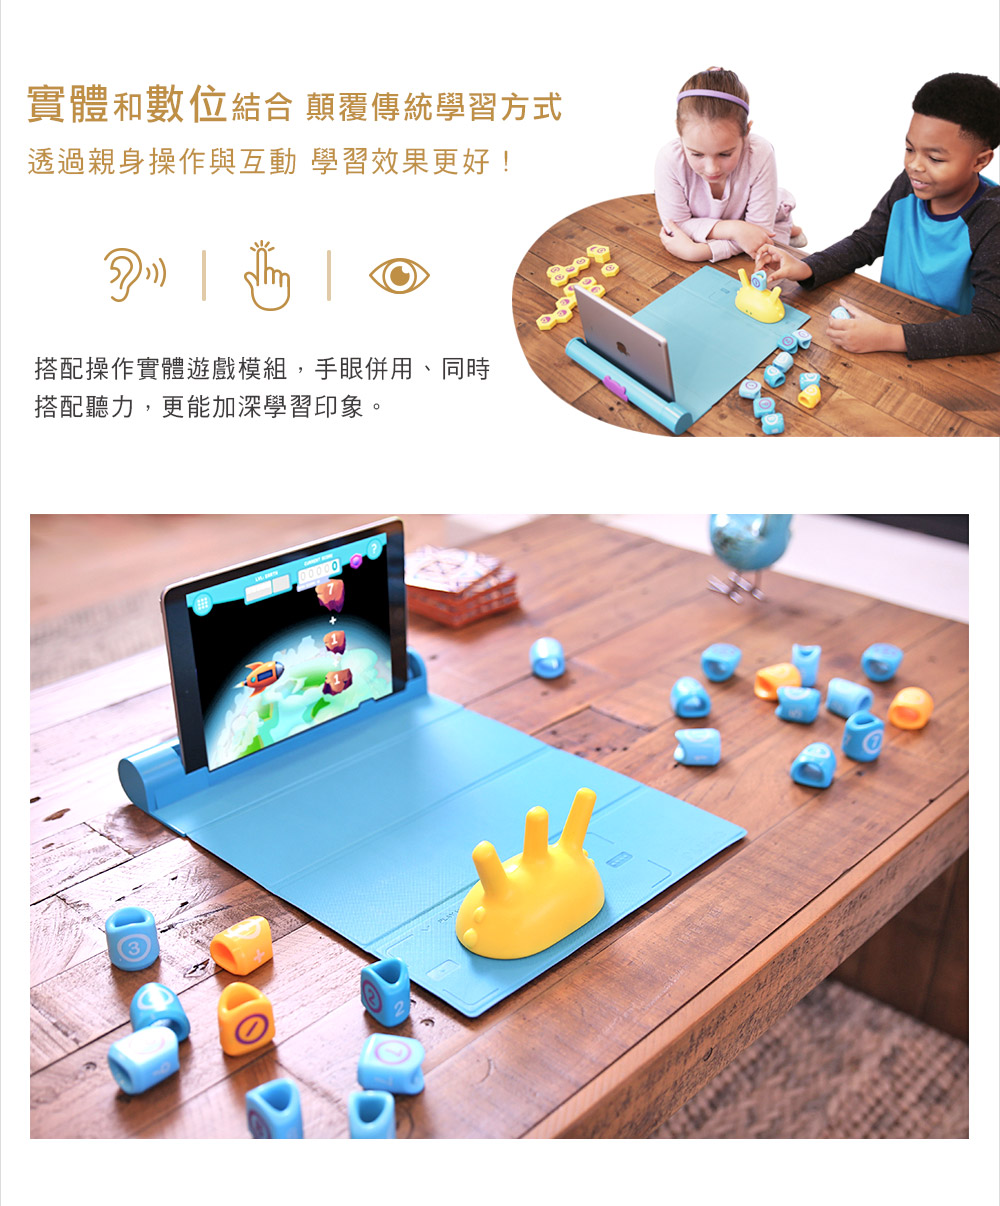 PLUGO 互動式益智教具 數學計算 | shifu 互動式玩具